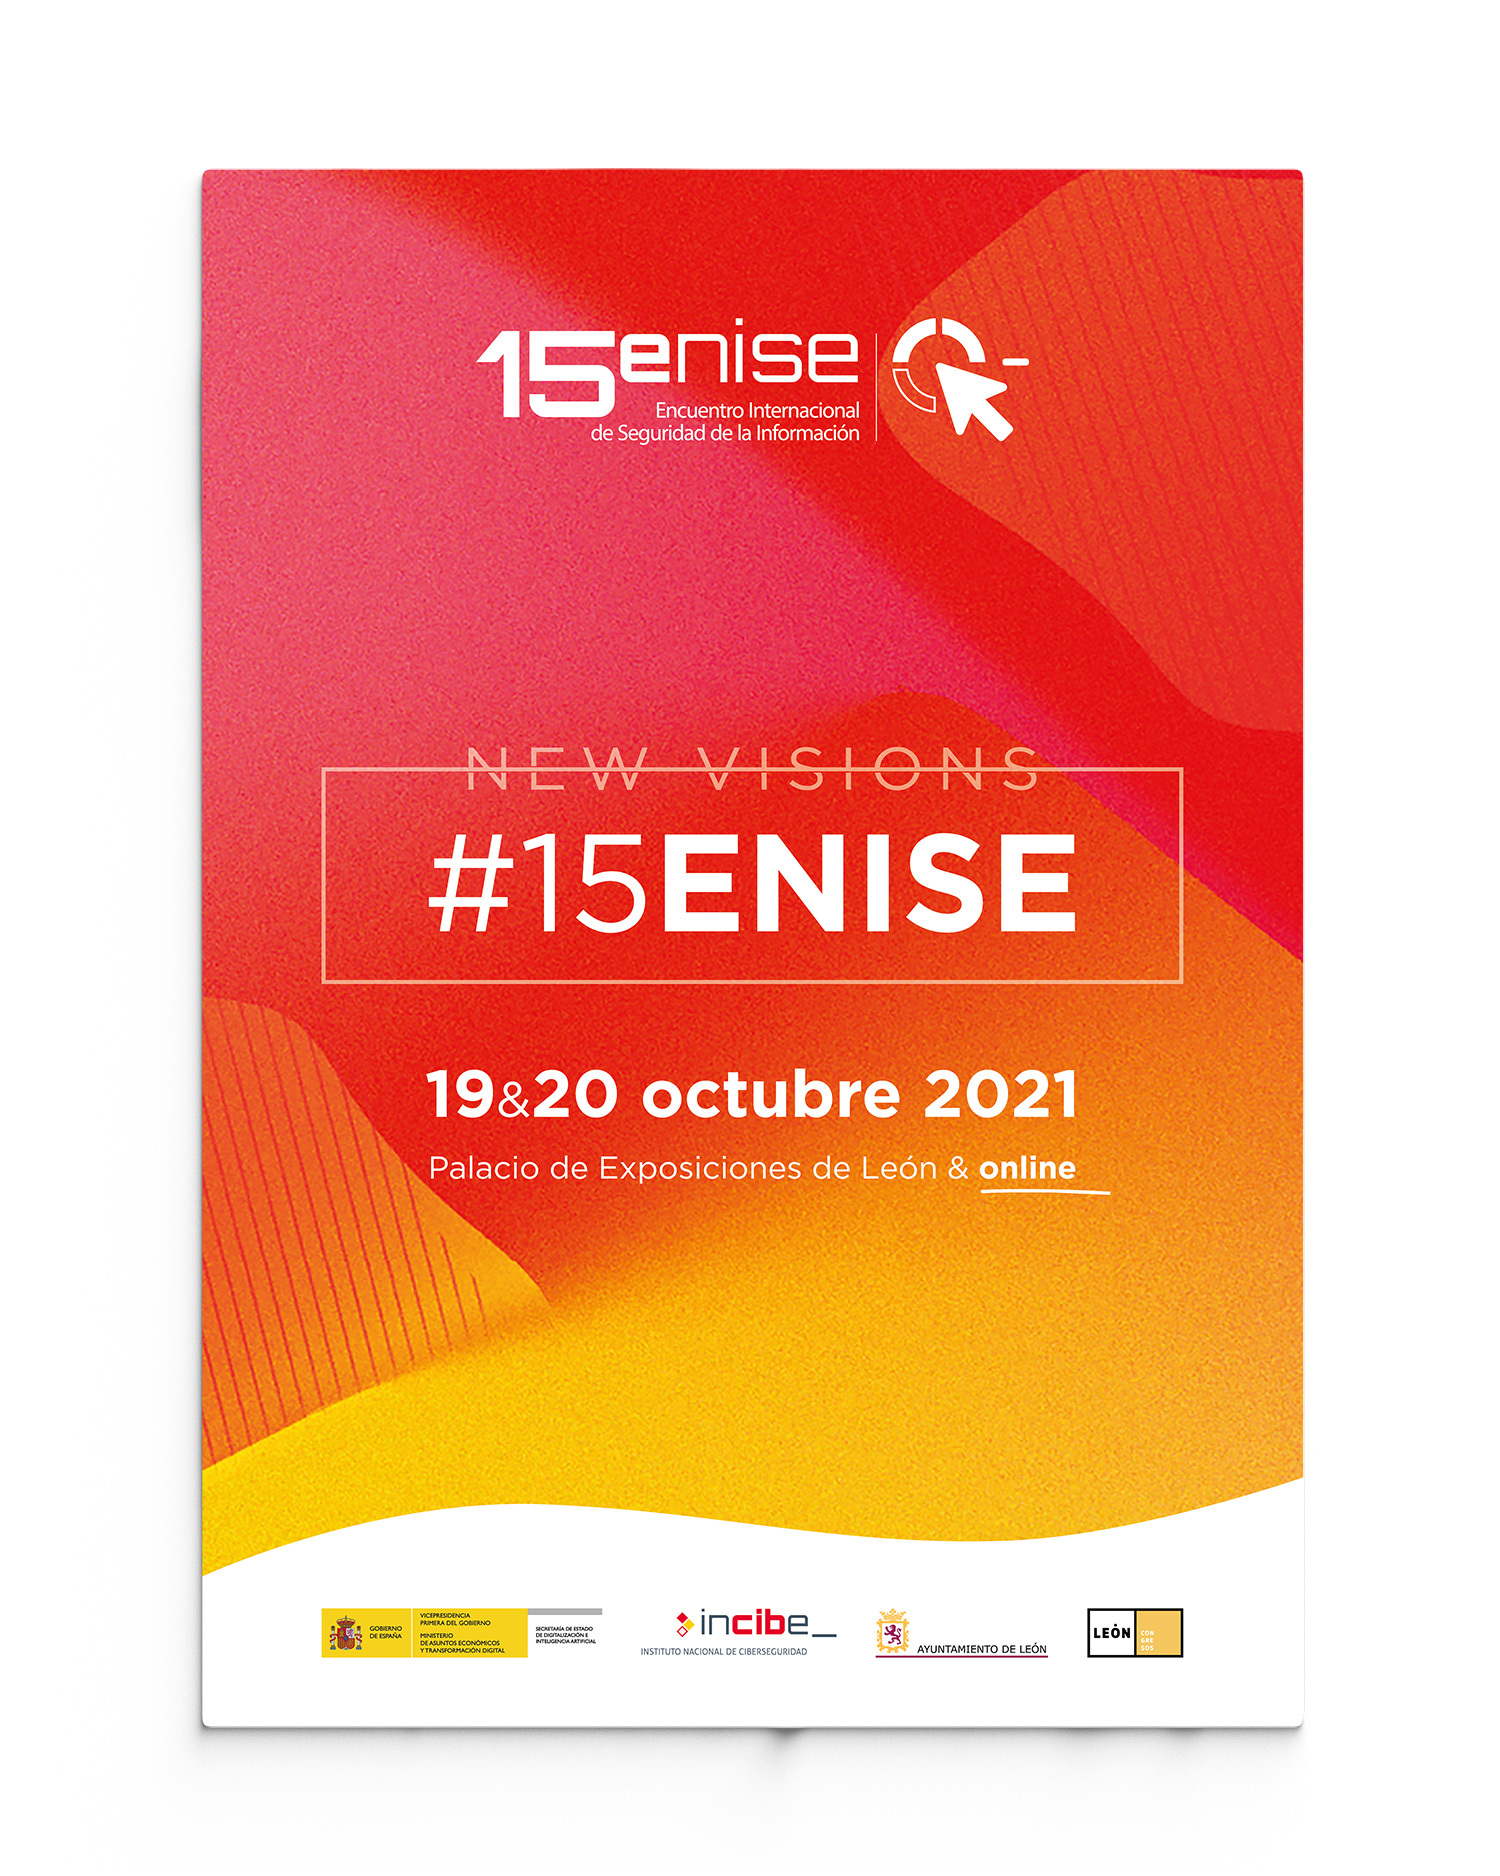 15ENISE - Encuentro Internacional de Seguridad de la Información